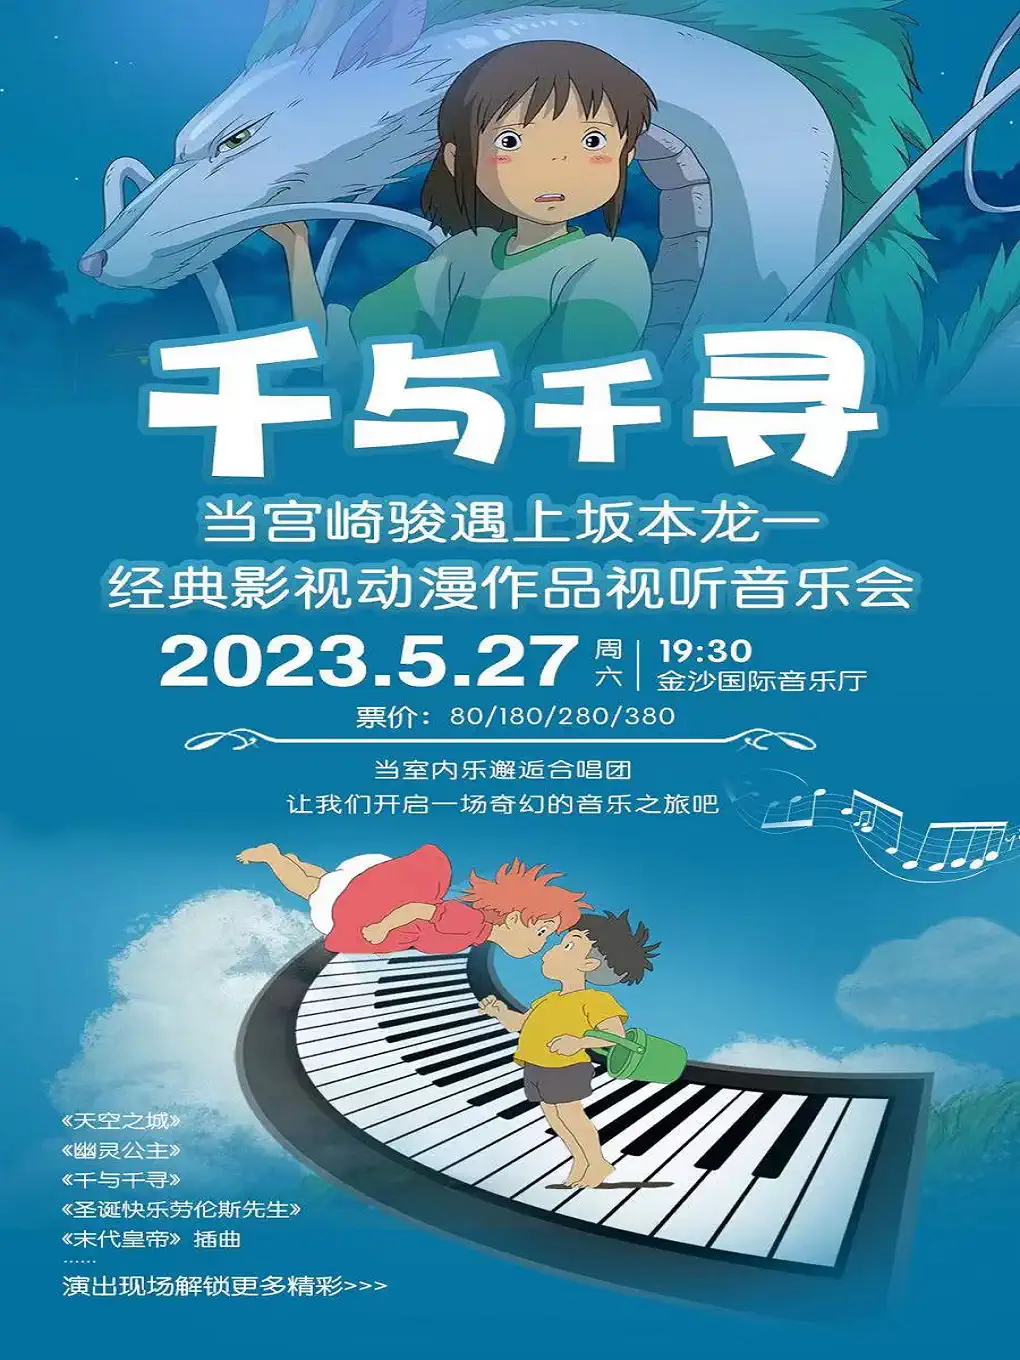 【成都】《千与千寻》当宫崎骏遇上坂本龙一经典影视动漫作品视听音乐会